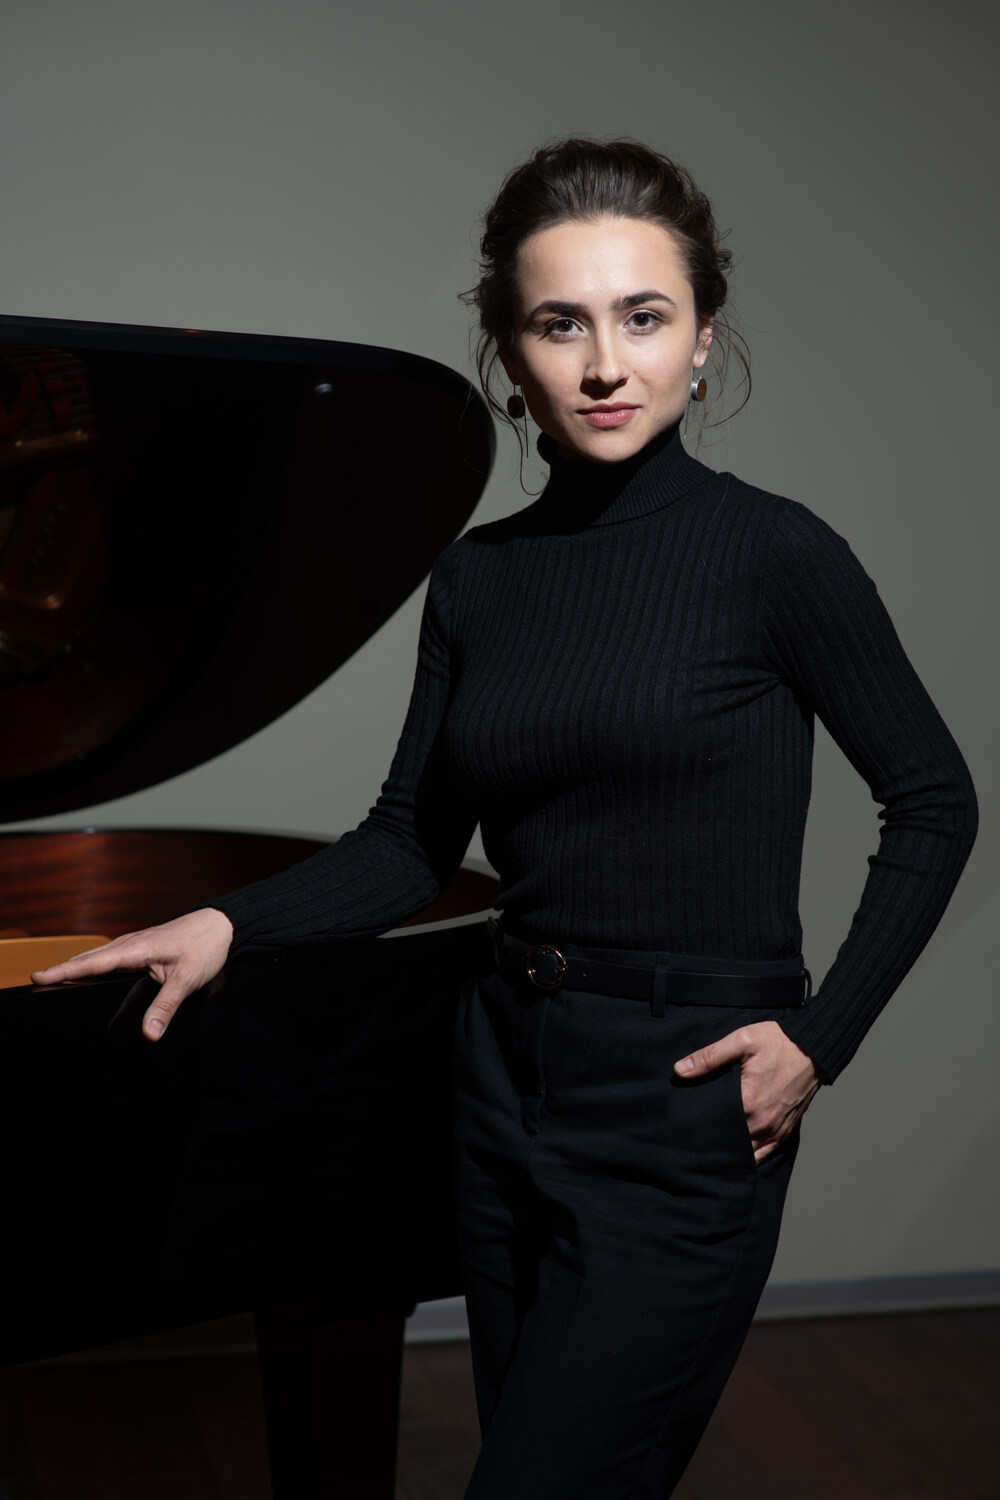 8 ноября пианистка Анна Цыбулева вместе с Национальным Филармоническим оркестром России исполнит Фортепианный концерт Грига